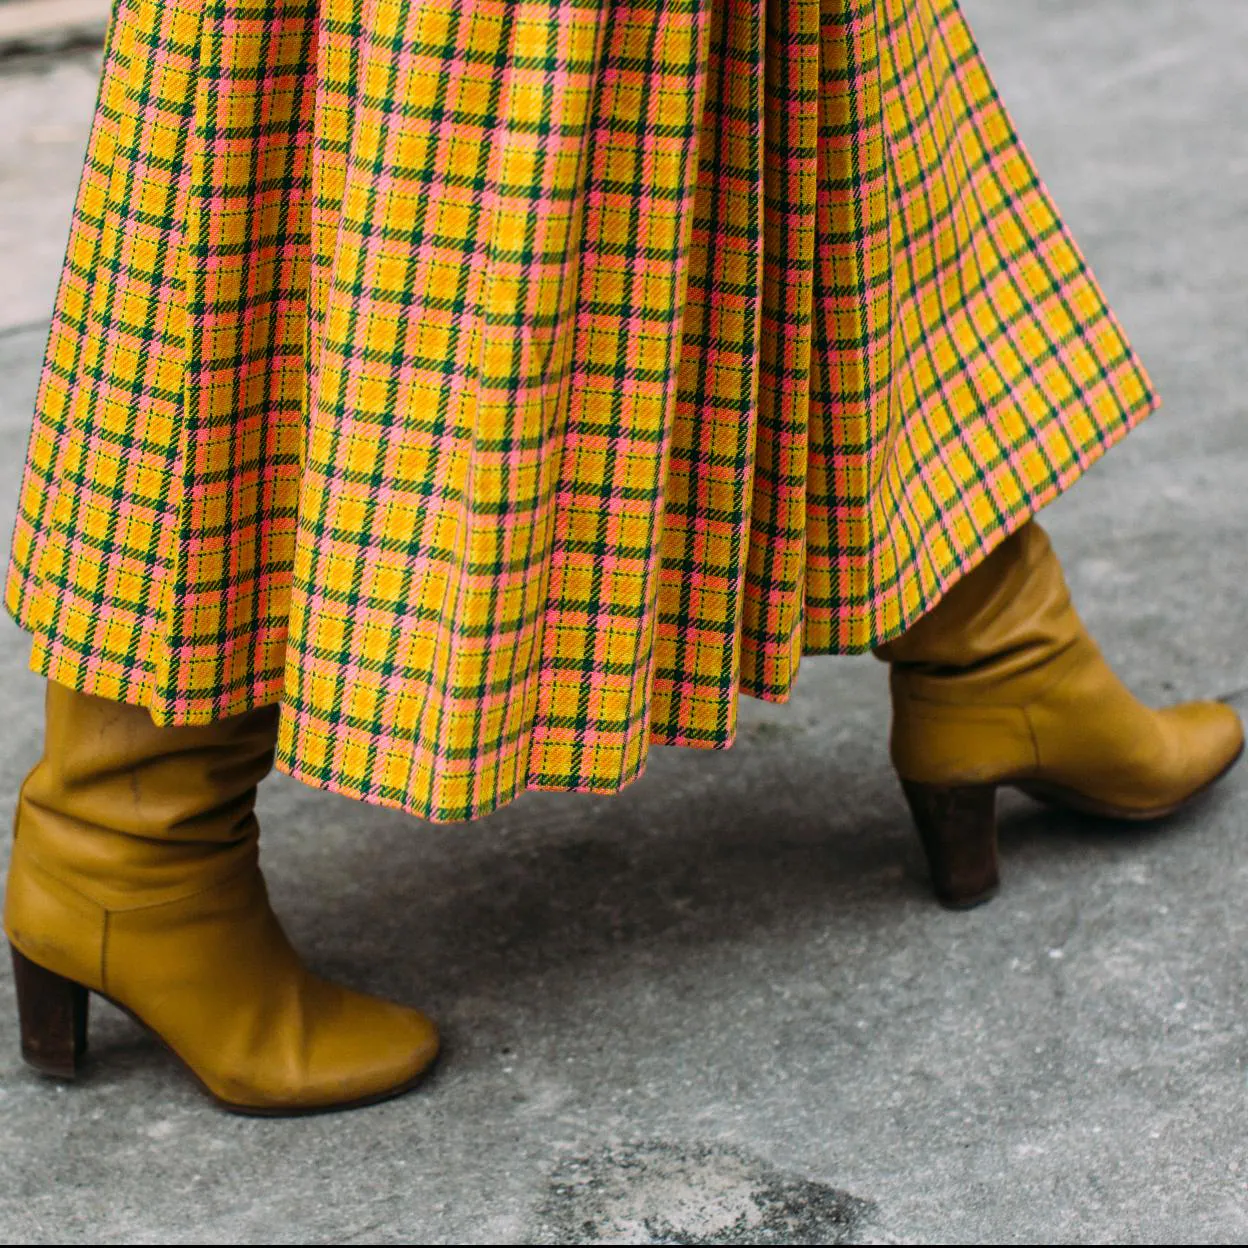 Bonitas, baratas y retro, las faldas la nueva colección de Sfera son todo lo que necesitamos para un look favorecedor la última | Mujer Hoy